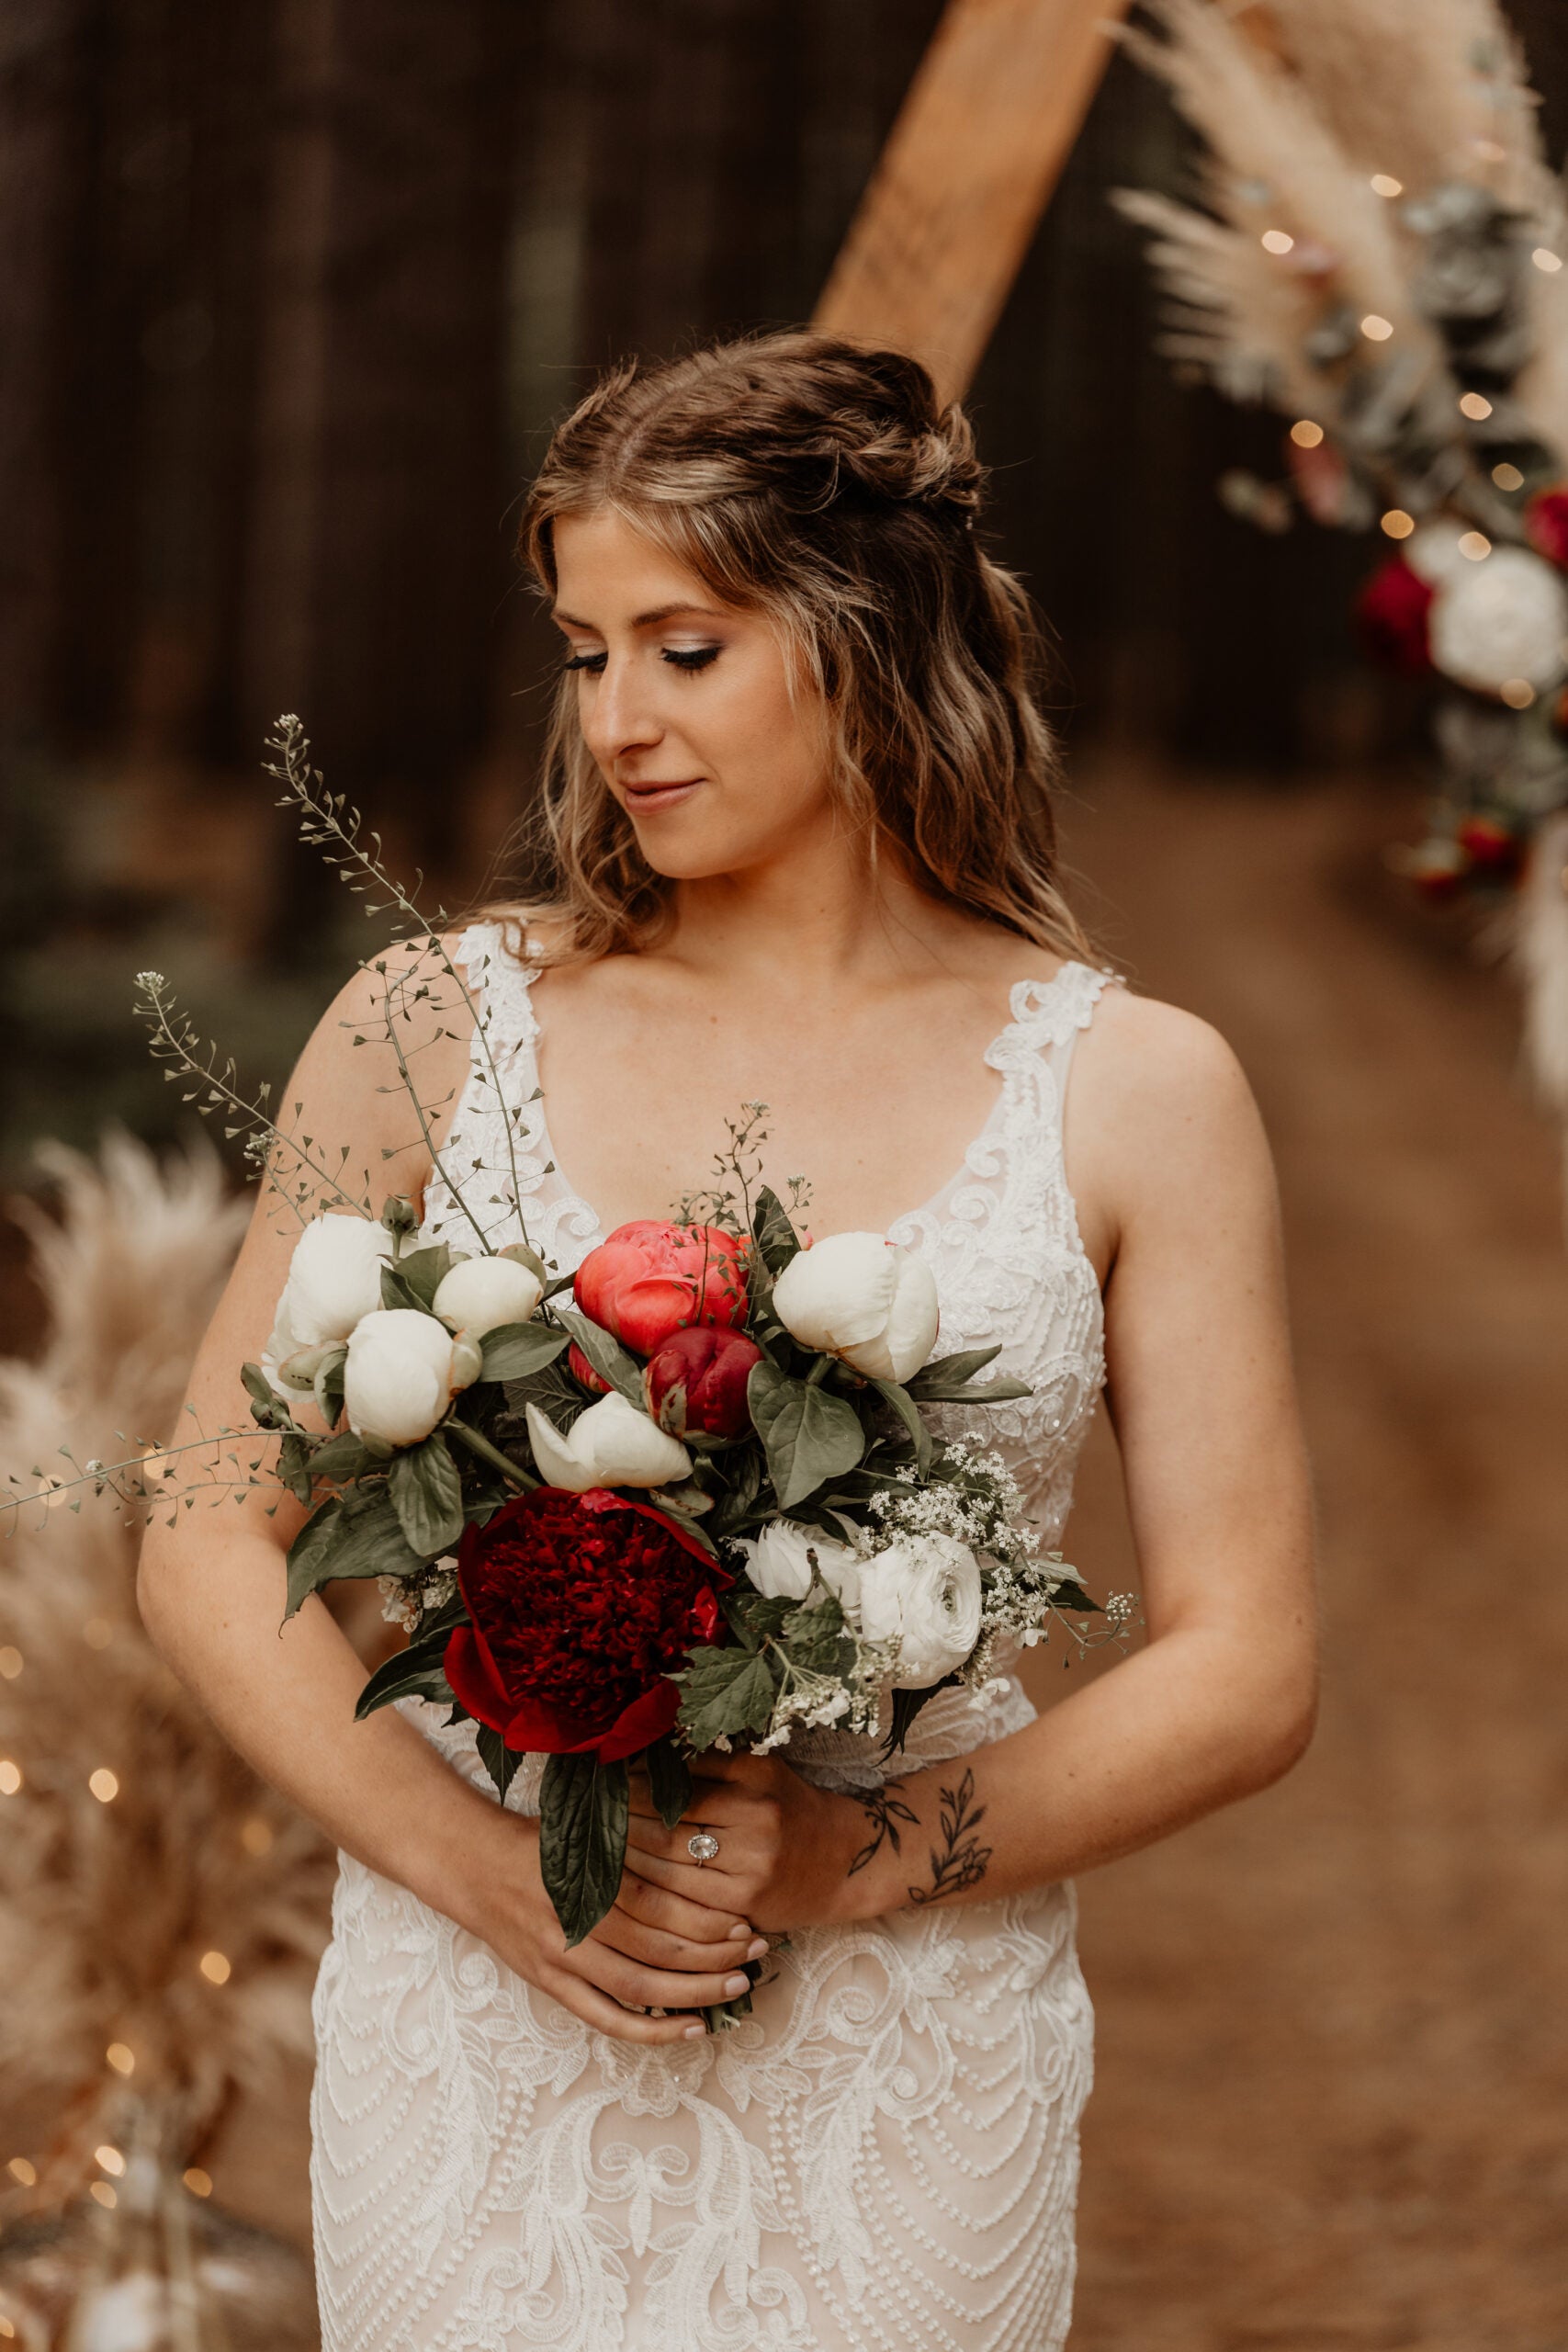 Pivoinerie Lili - Des fleurs pour votre mariage